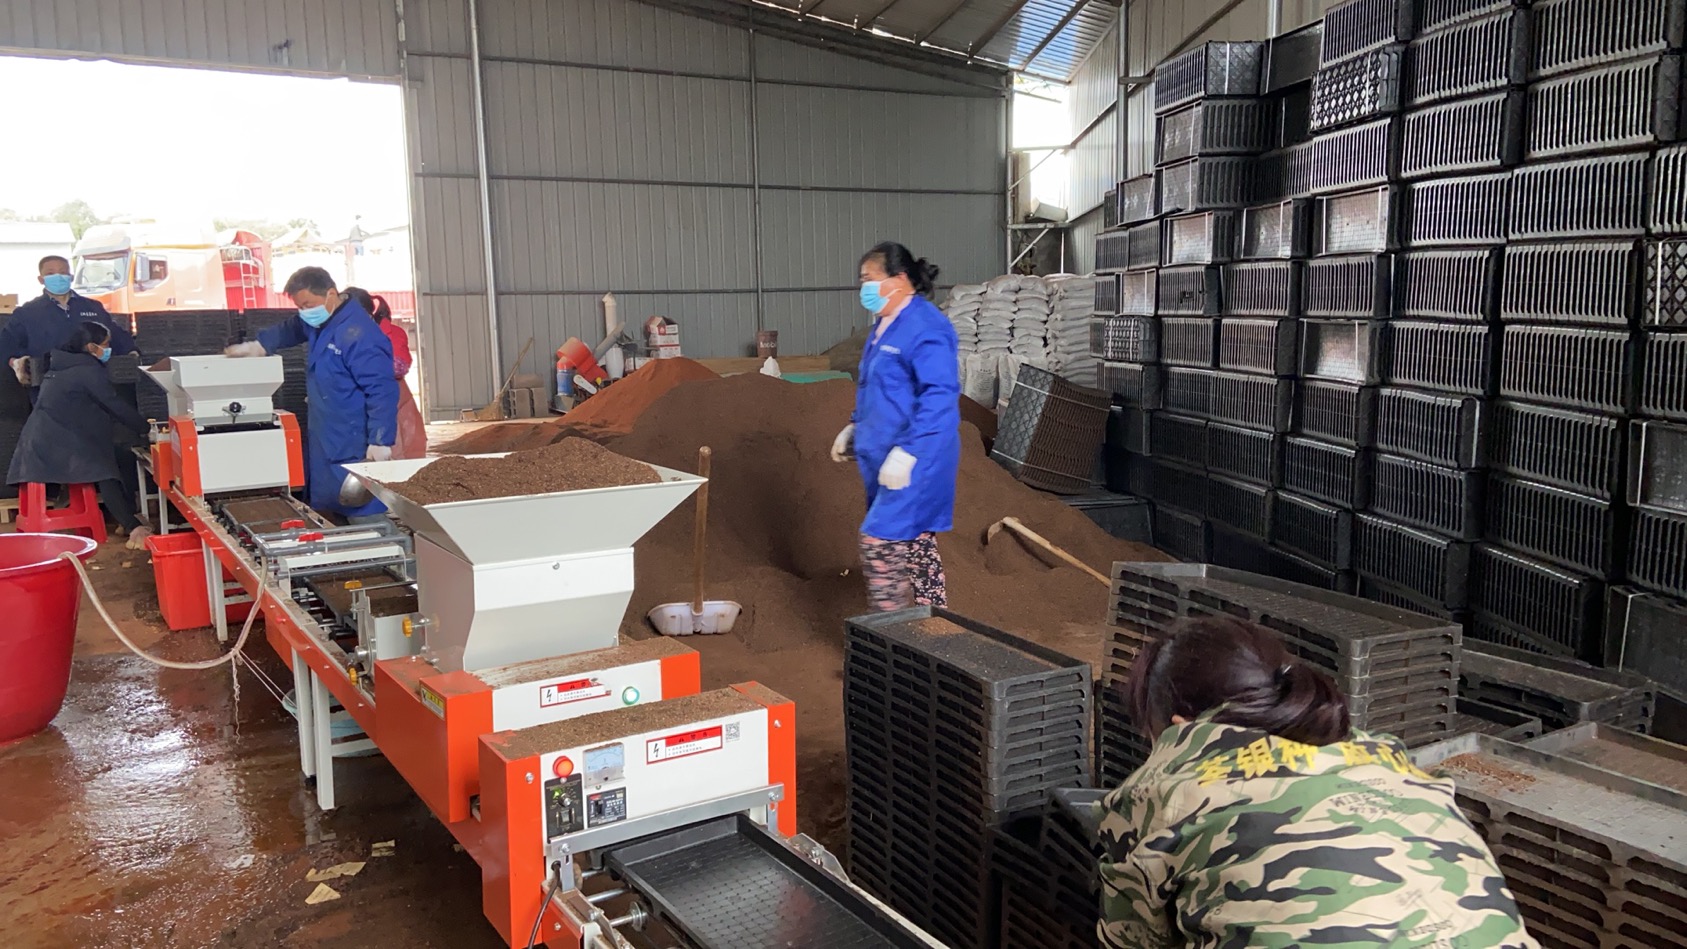 宁乡市供销社龙泉湖水稻工厂化育秧生产正在投入运营。